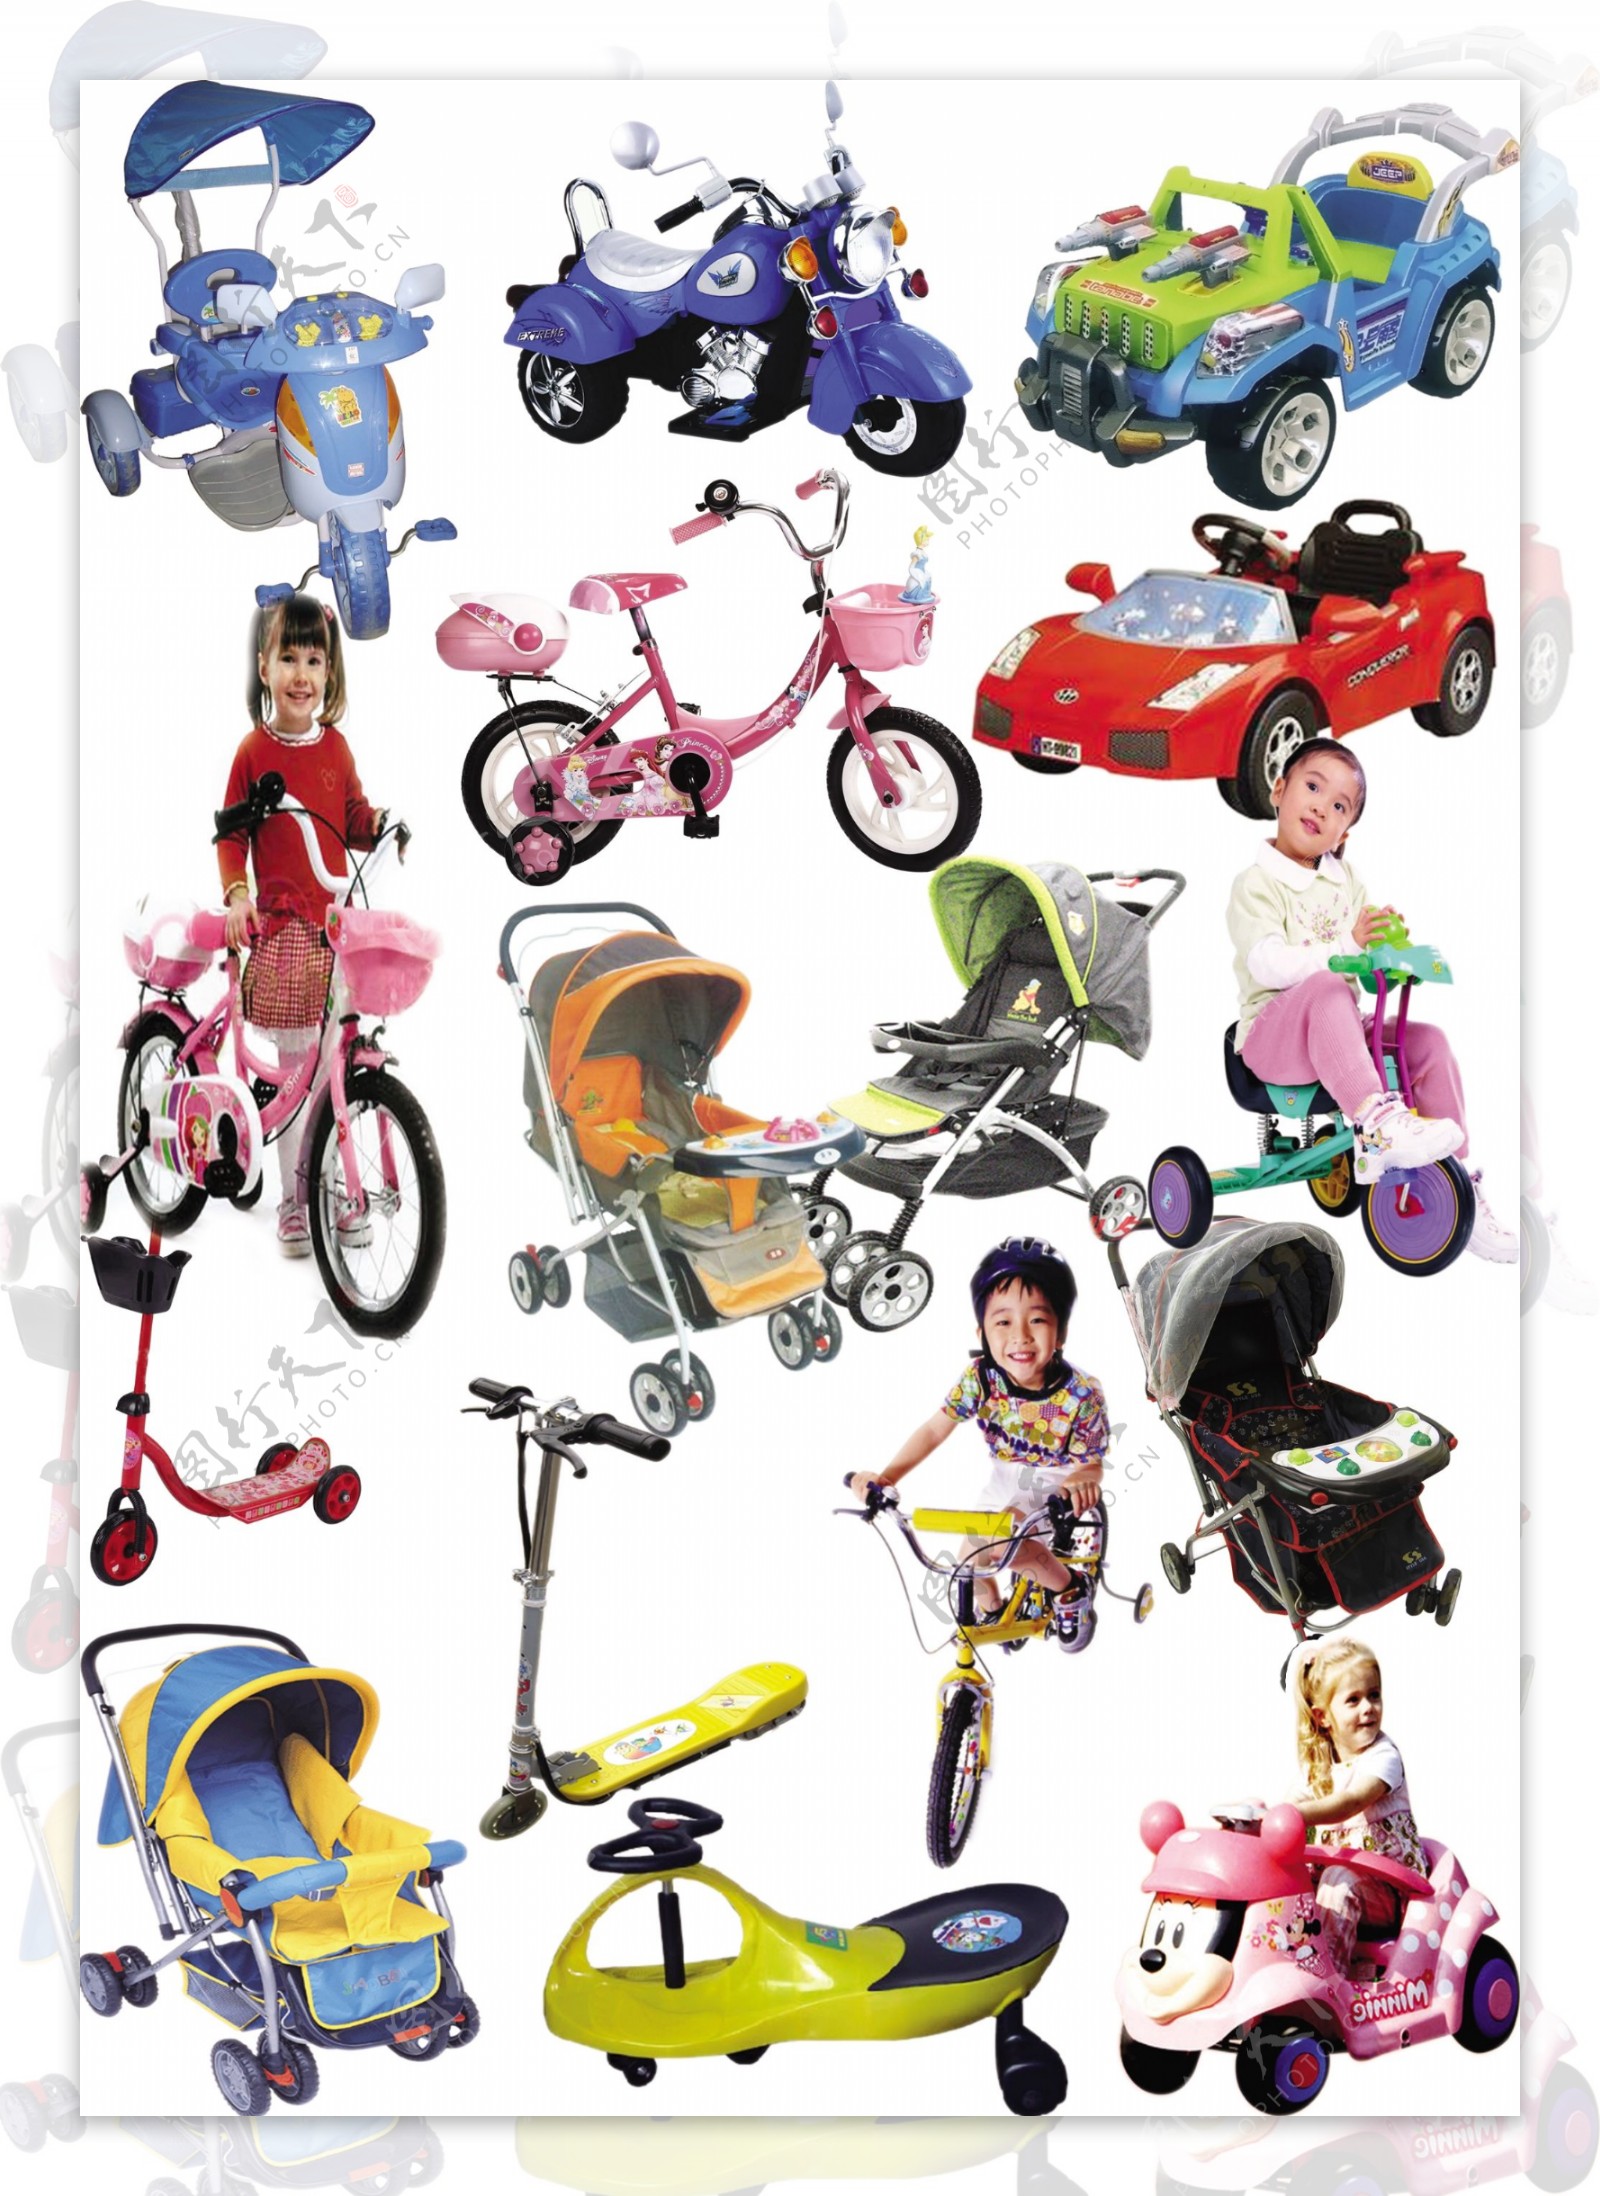 儿童三轮车前篮后筐2-6岁儿童脚踏车童车自行车厂家批发-阿里巴巴